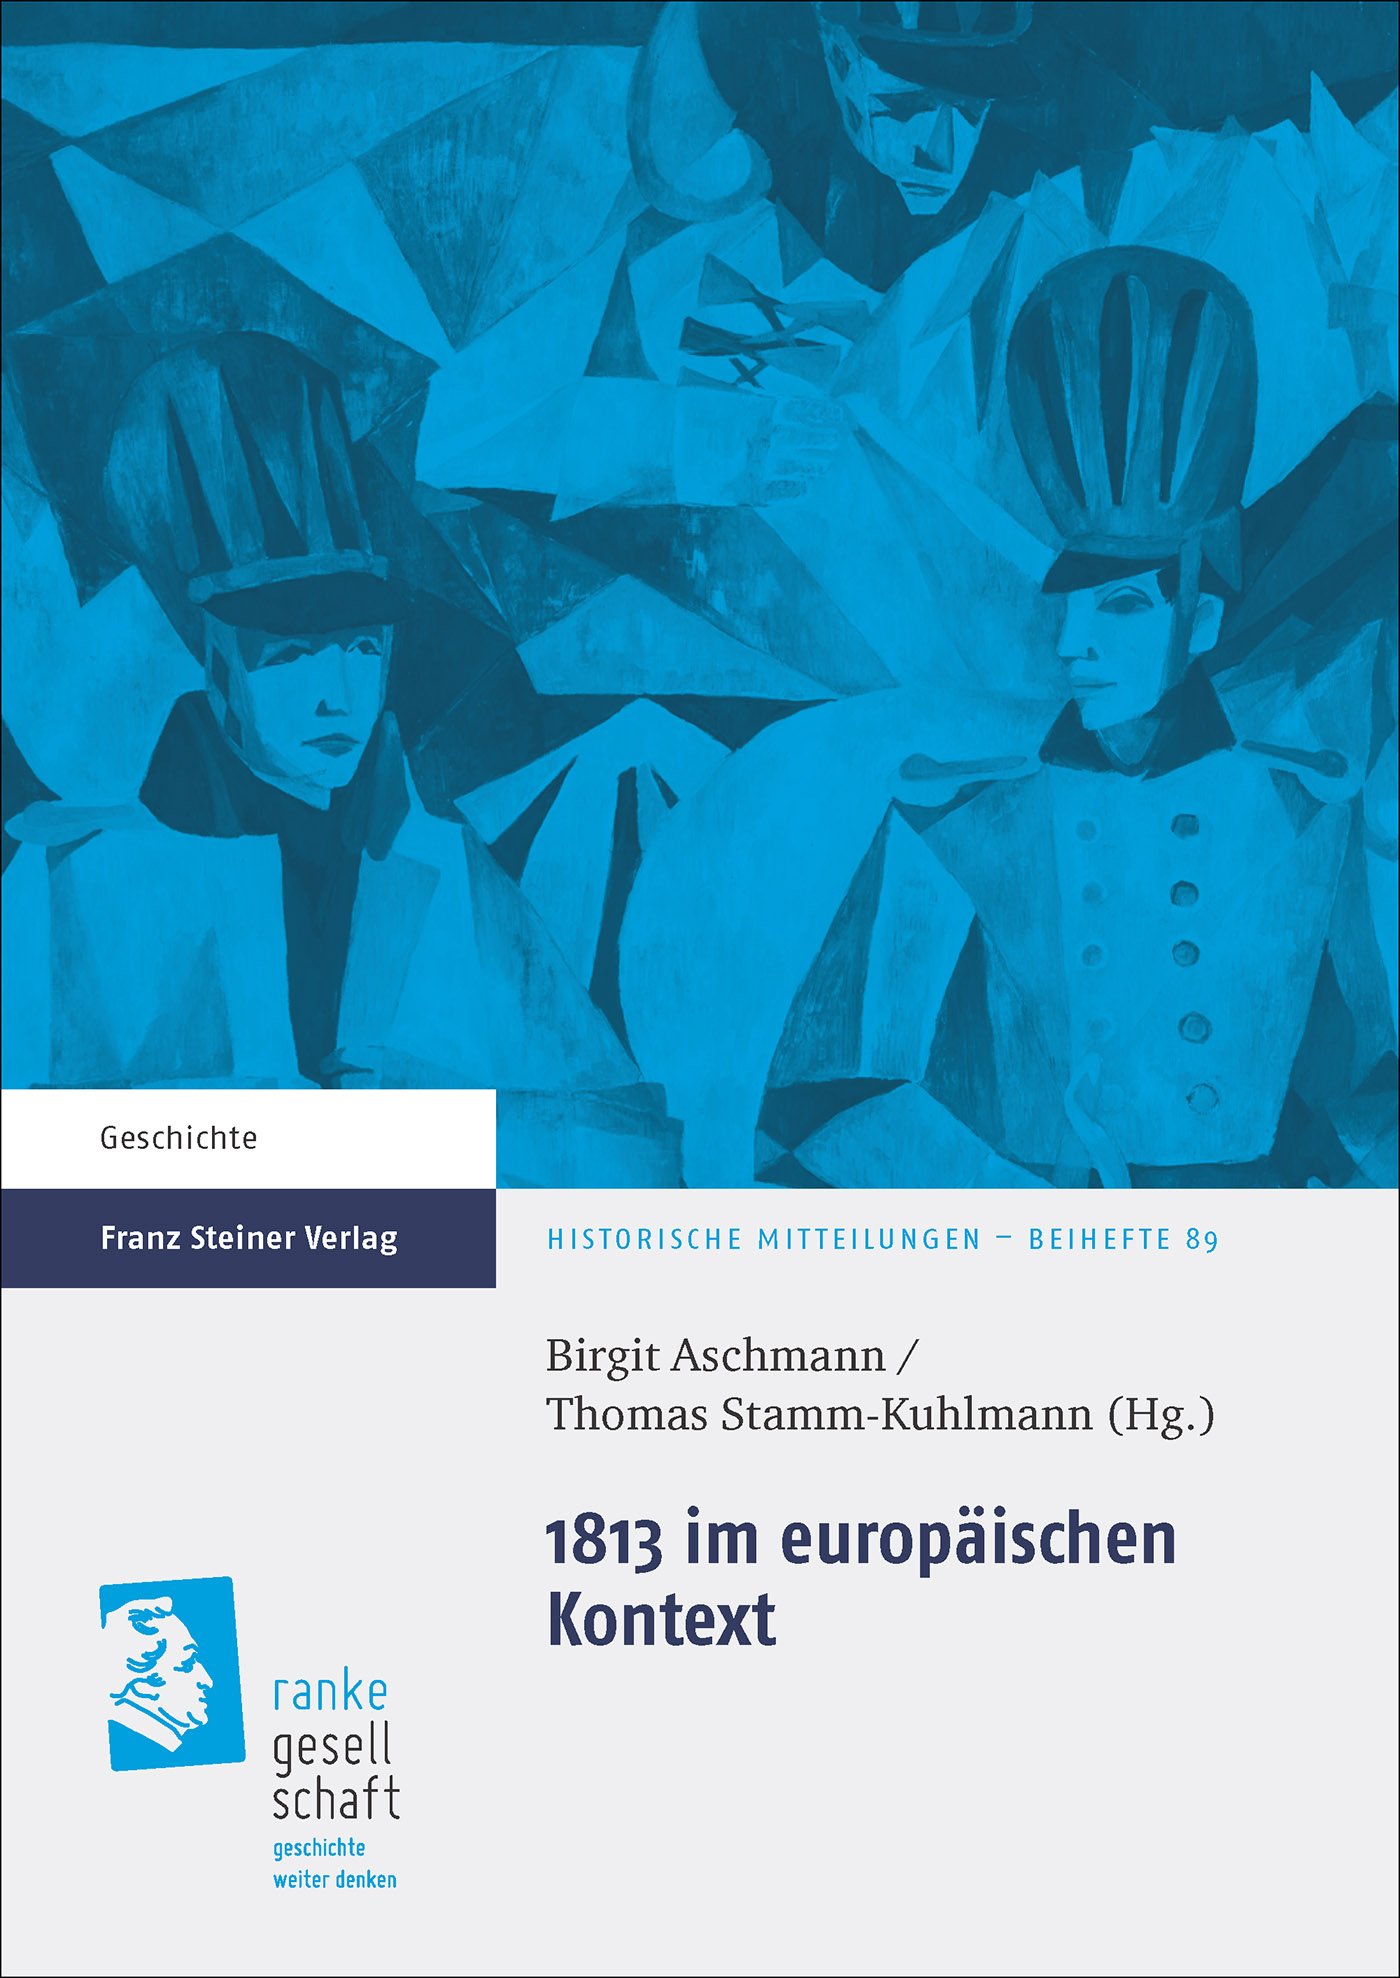 1813 im europäischen Kontext